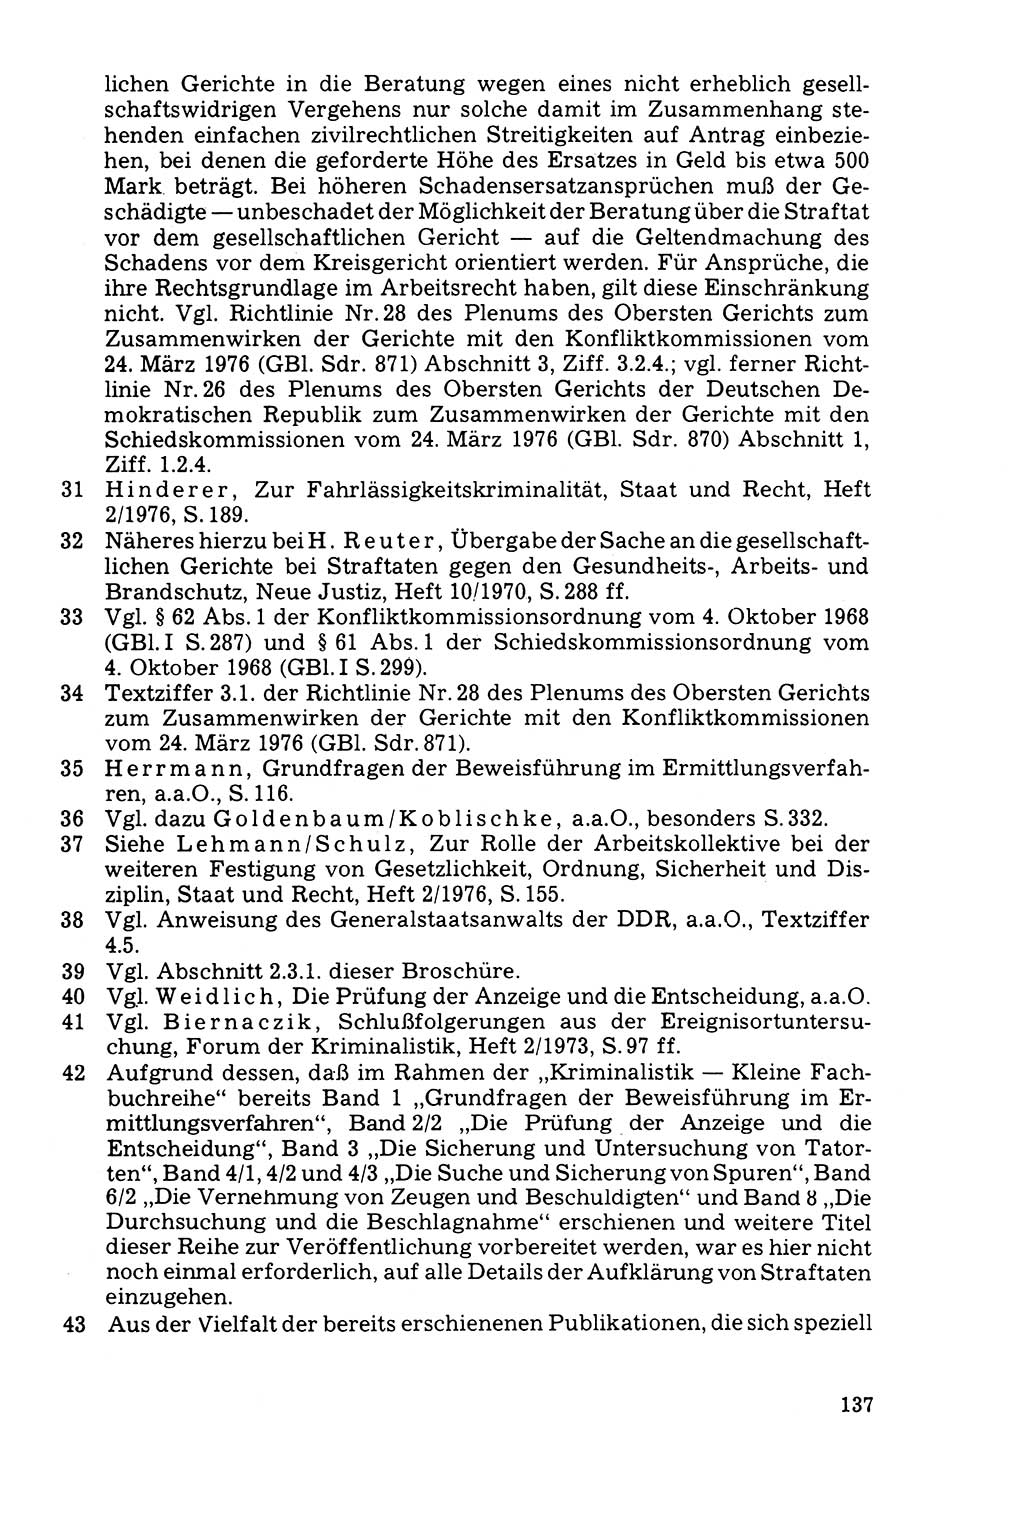 Der Abschluß des Ermittlungsverfahrens [Deutsche Demokratische Republik (DDR)] 1978, Seite 137 (Abschl. EV DDR 1978, S. 137)